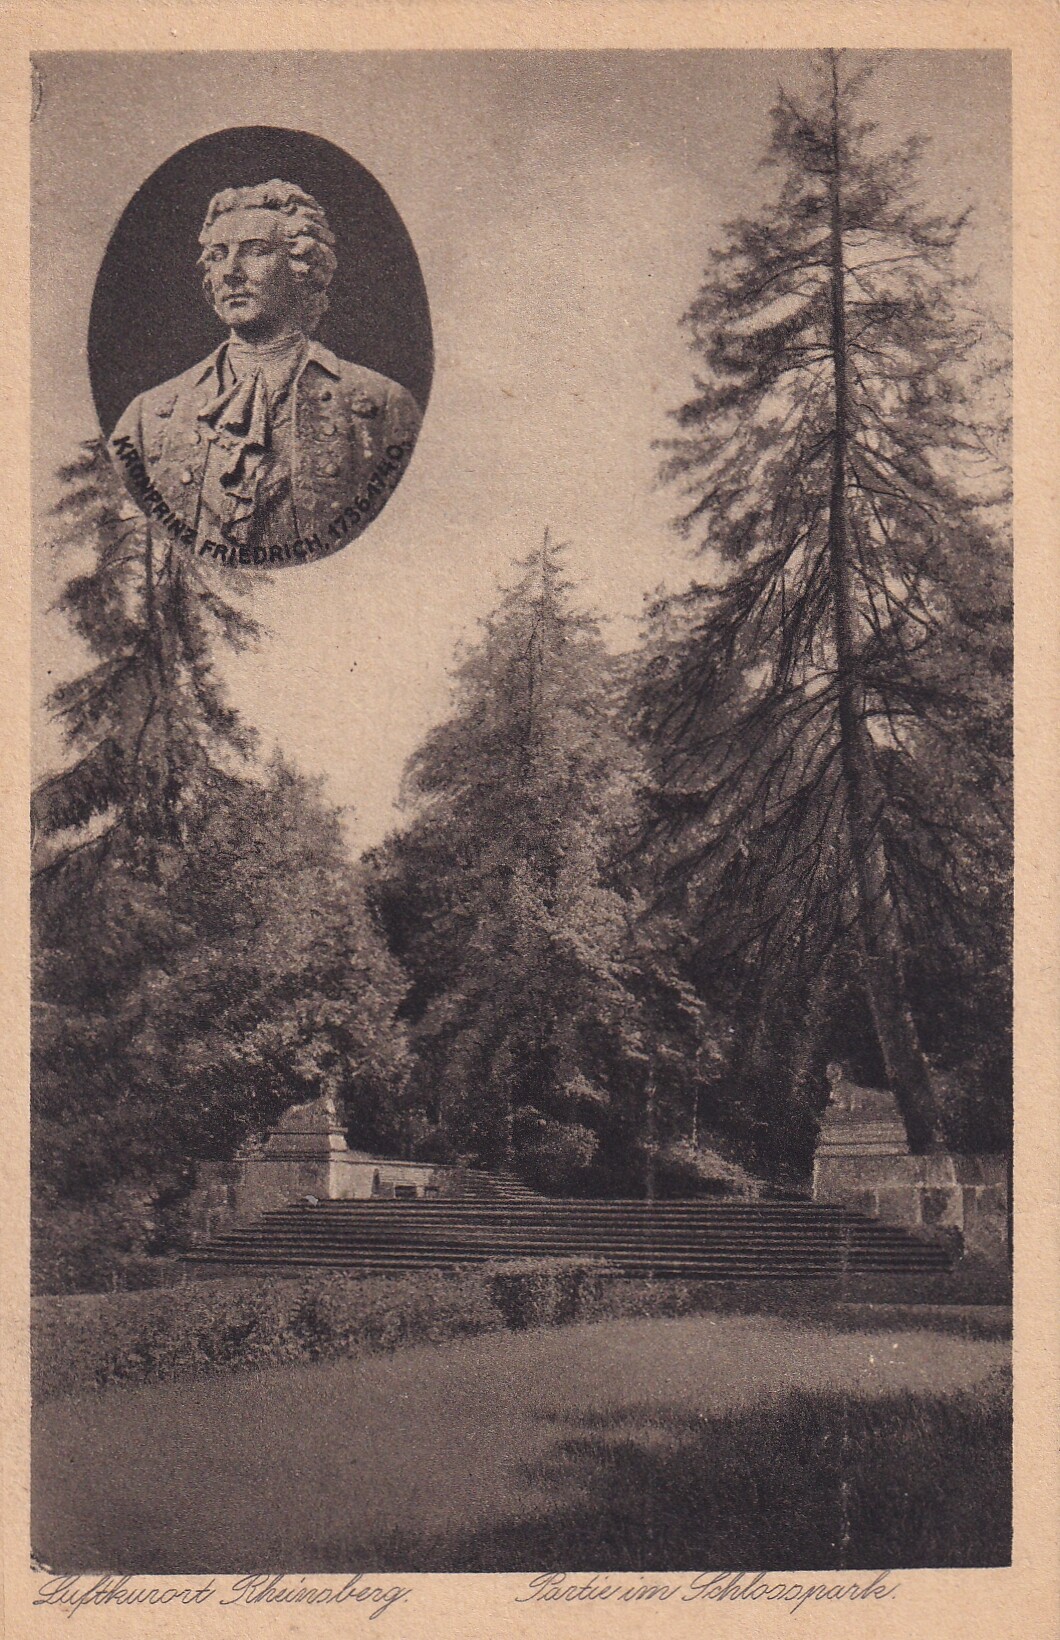 Bildpostkarte mit fotografischer Ansicht einer Partie aus dem Schlosspark in Rheinsberg (Brandenburg), um 1920 (Schloß Wernigerode GmbH RR-F)